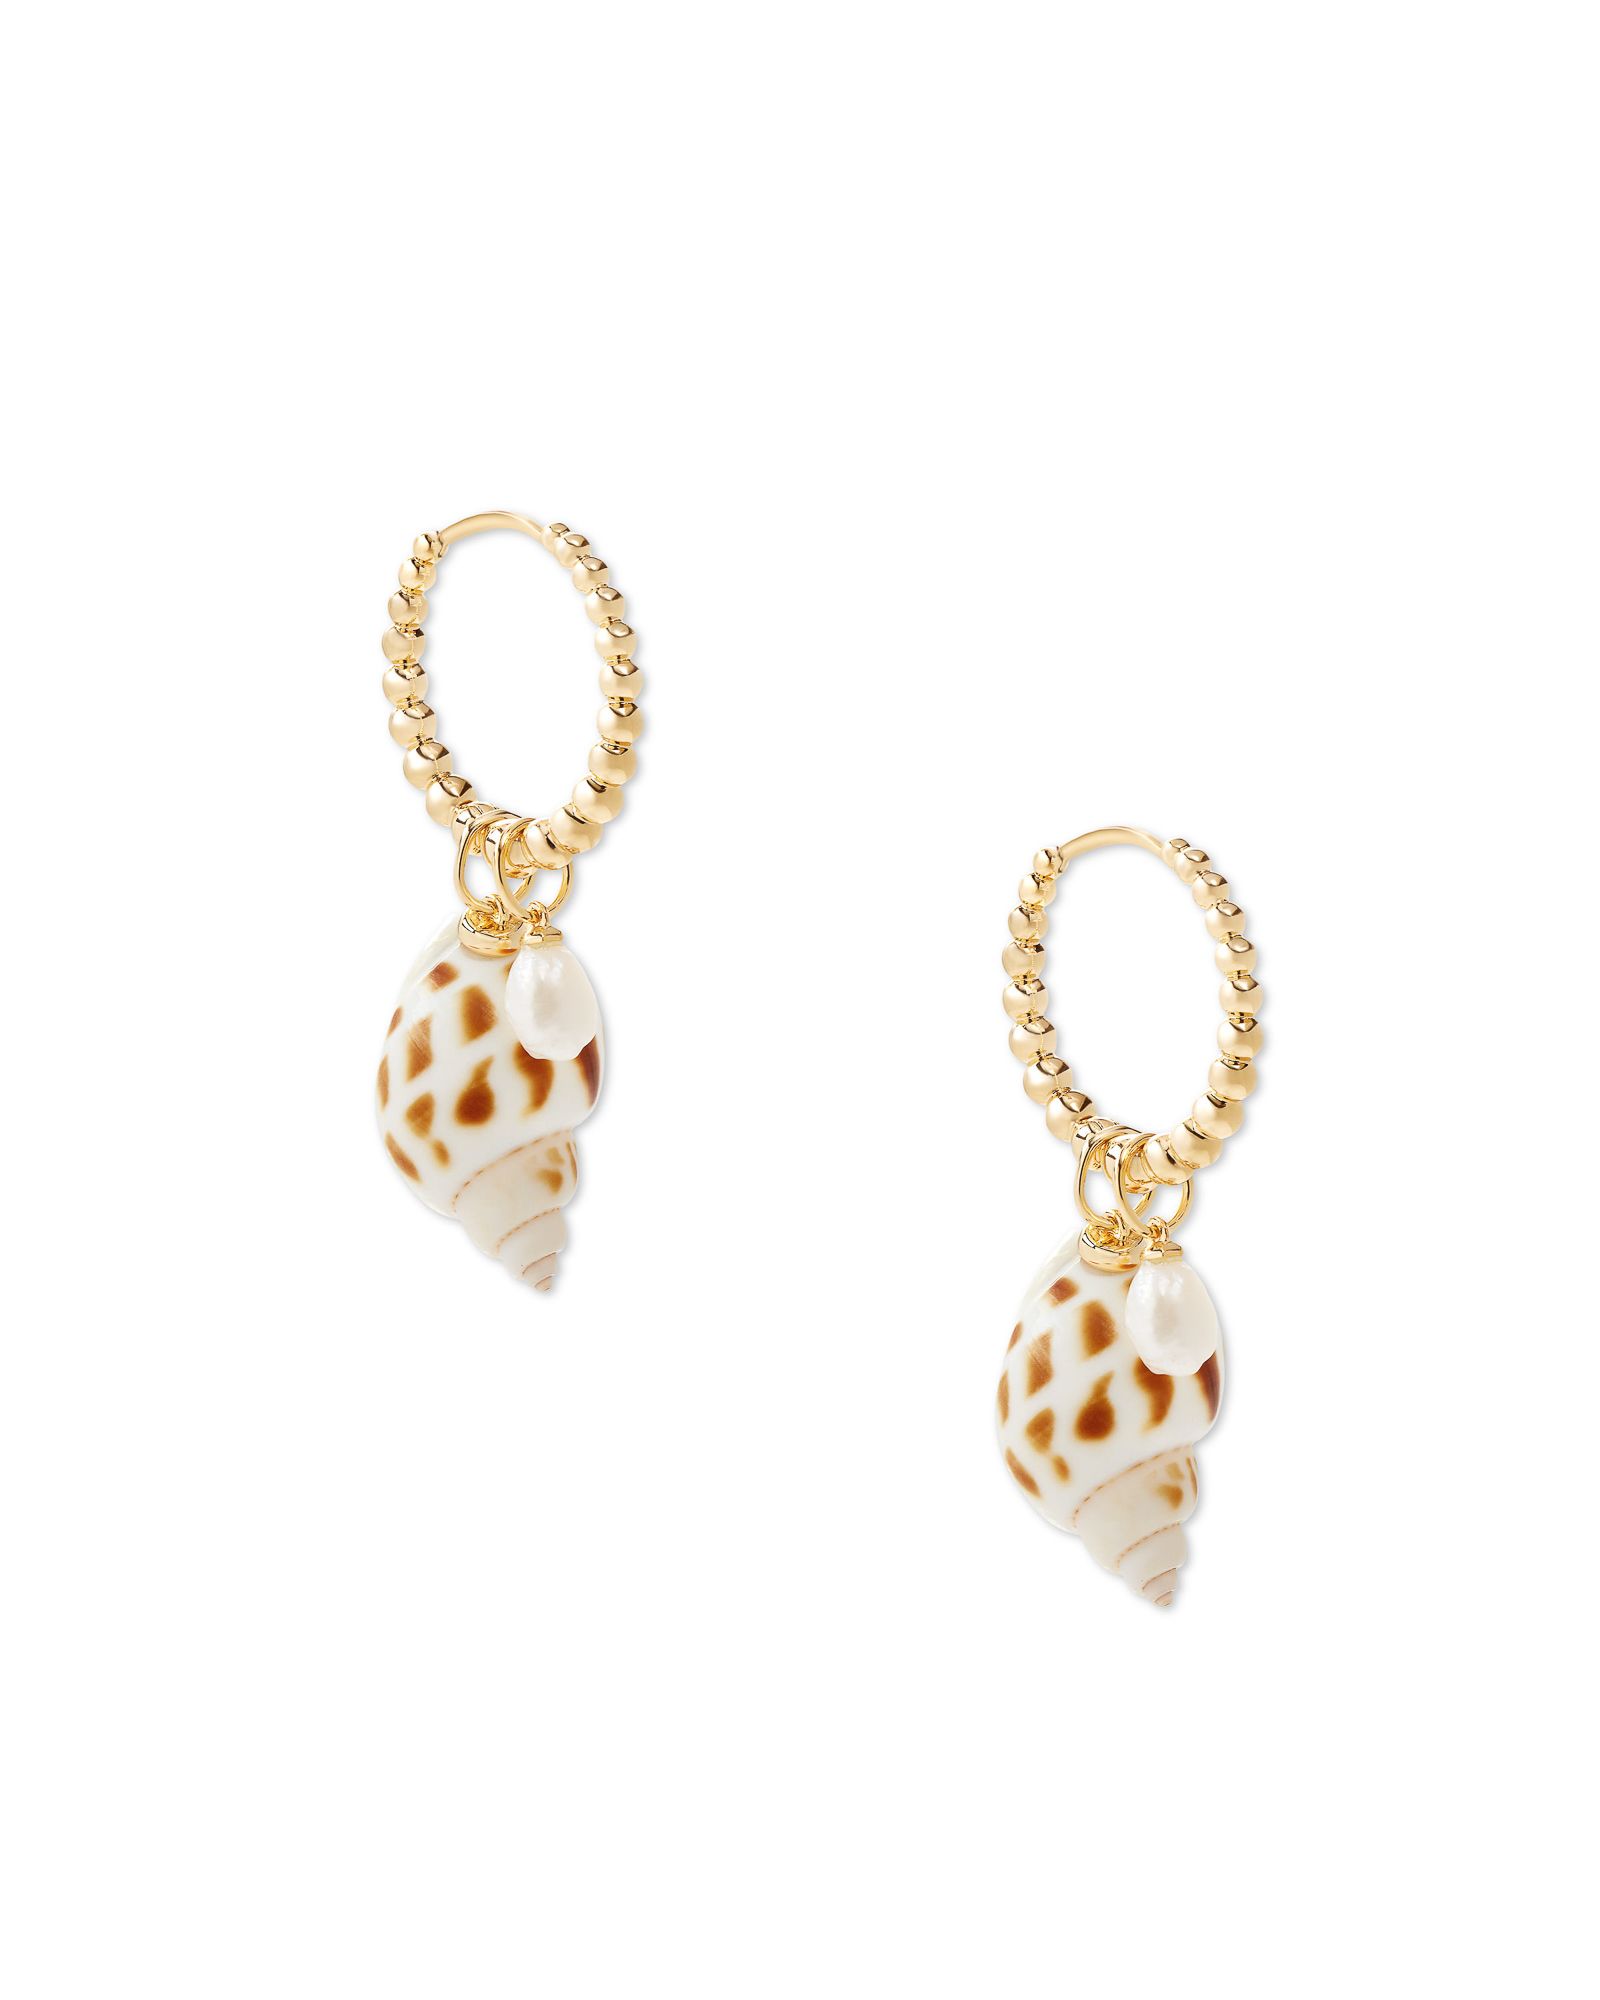 Oleana Gold Huggie Earrings in Spotted Shell | Kendra Scott